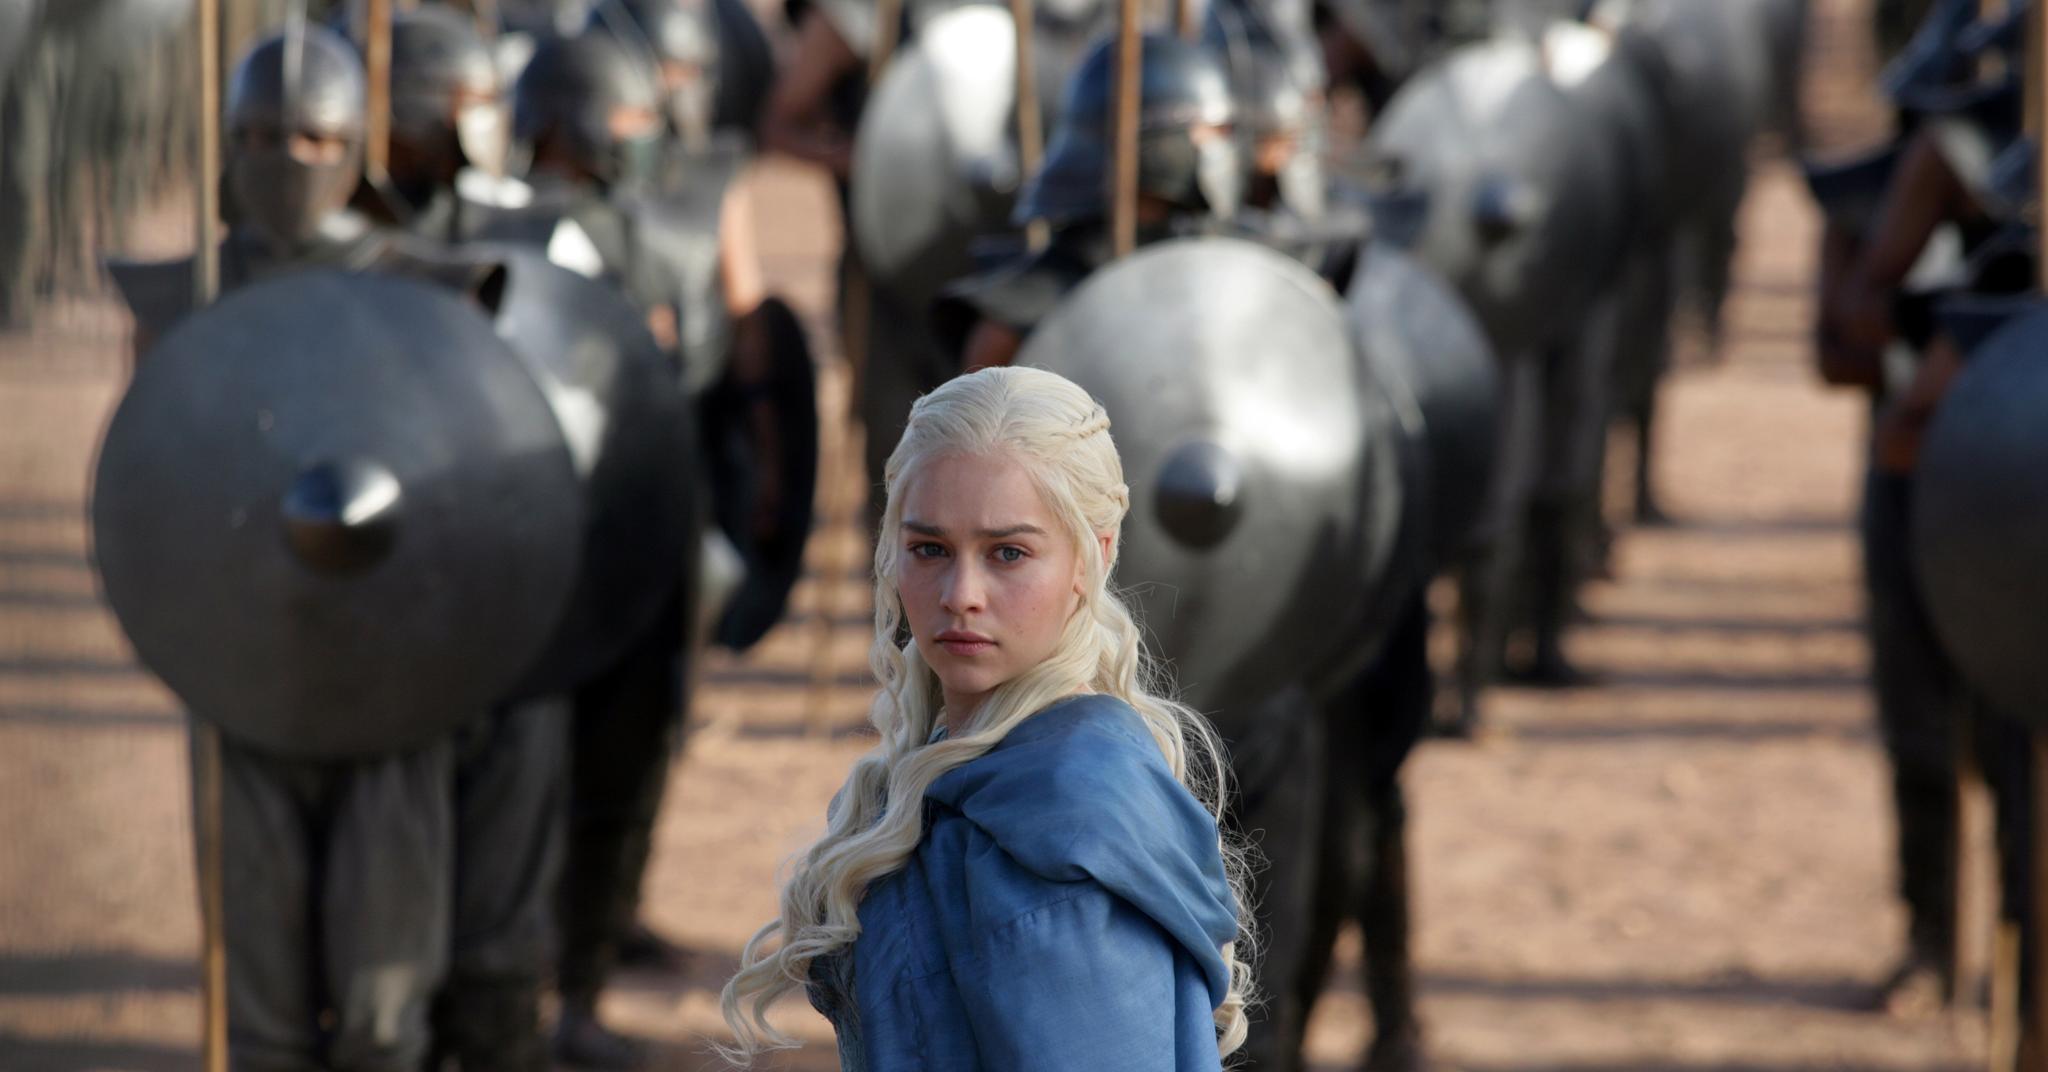 «Game of Thrones»-fans må smøre seg med tålmodighet. Den åttende og siste sesongen av serien kommer først neste år. Bildet viser en av hovedrolleinnehaverne, Emilia Clarke, i rollen som Daenerys Targaryen. Foto: Keith Bernstein / AP / NTB scanpix